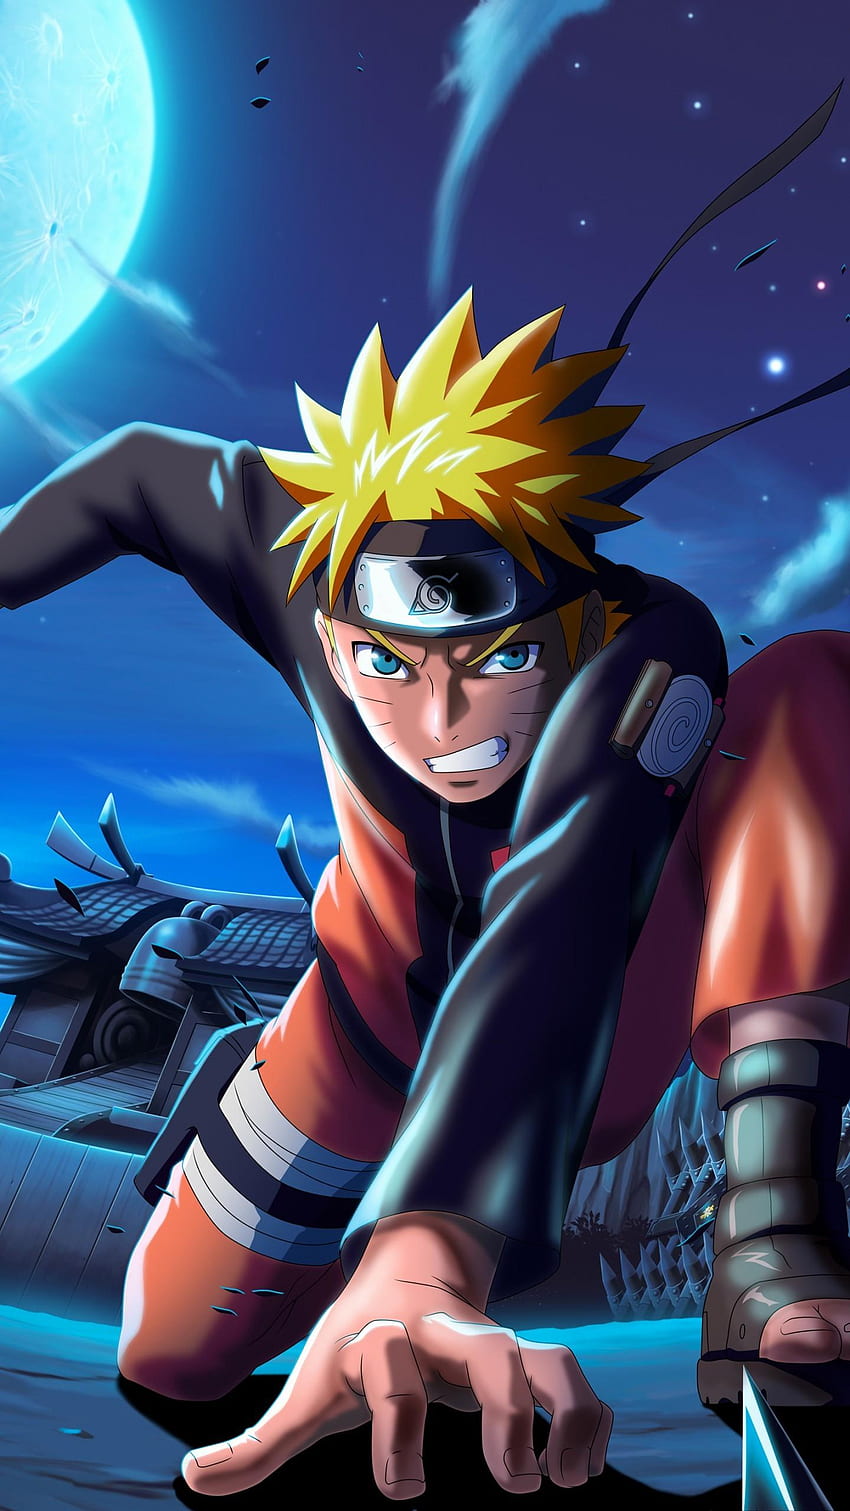 Hình nền Naruto Uzumaki HD cho điện thoại của bạn giúp bạn thể hiện sự yêu thích và đam mê với bộ truyện tranh này. Cùng ngắm nhìn bức hình đẹp này và cảm nhận sự mạnh mẽ, dũng cảm của nhân vật chính Naruto Uzumaki!